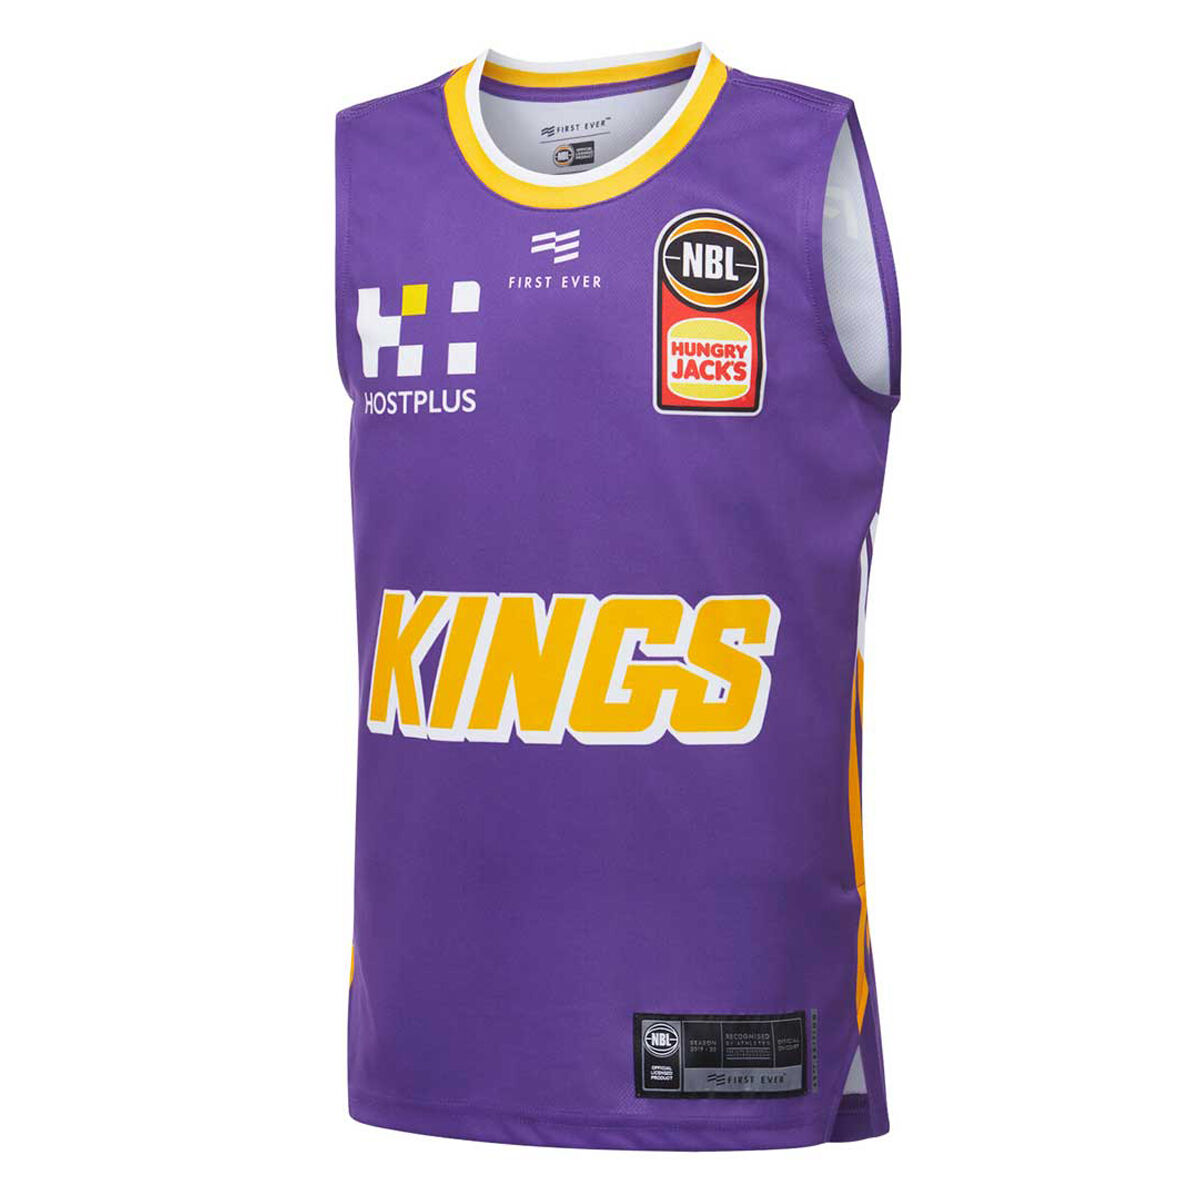 2019 kings jersey